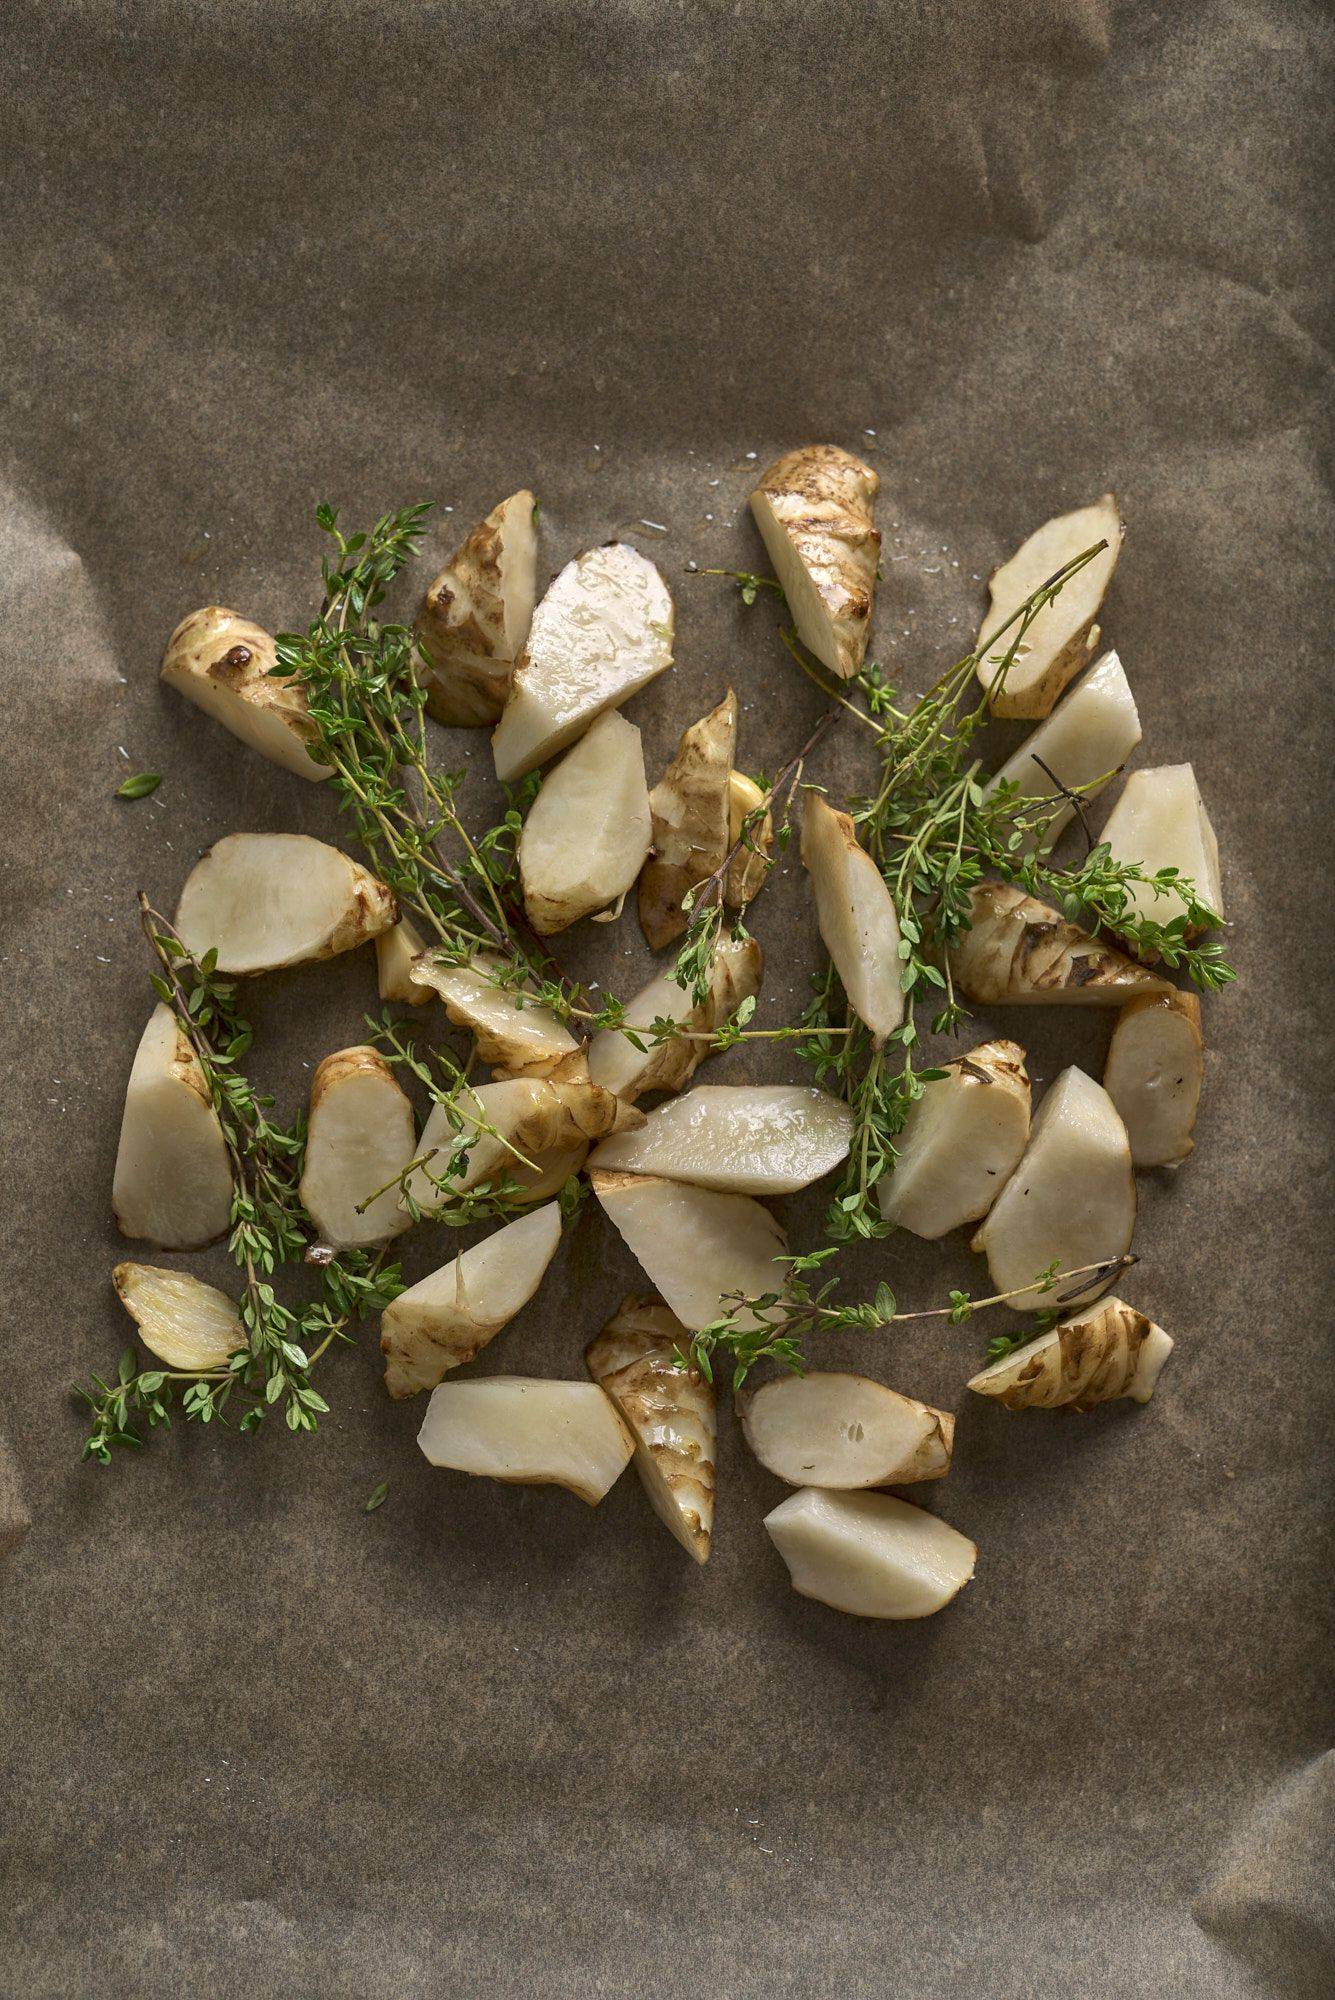 raw marinated jerusalem artichokes on a baking sheet